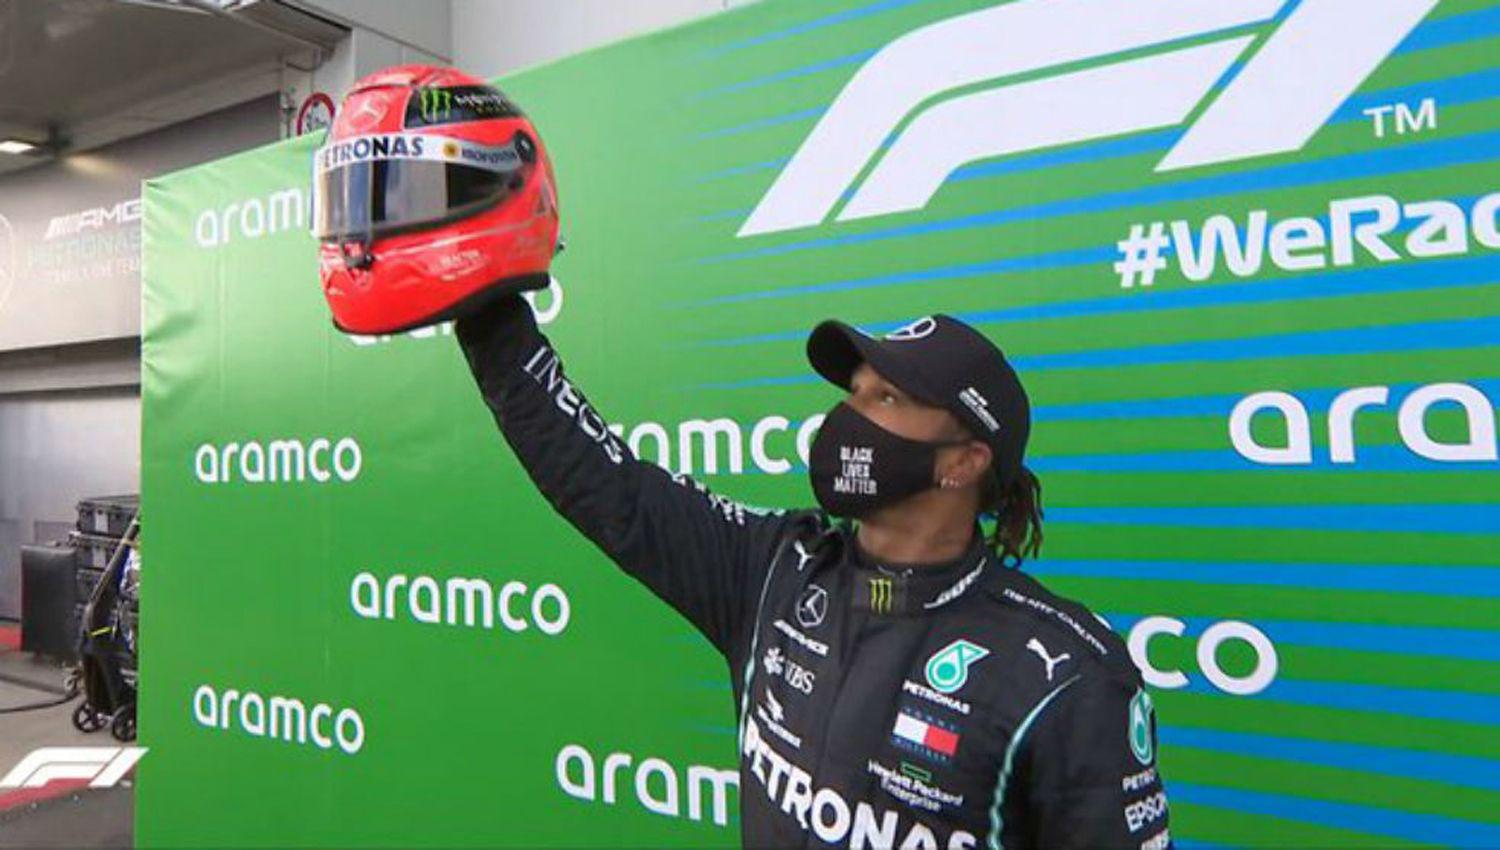 Foacutermula 1- Histoacuterico triunfo de Lewis Hamilton en el GP de Eifel